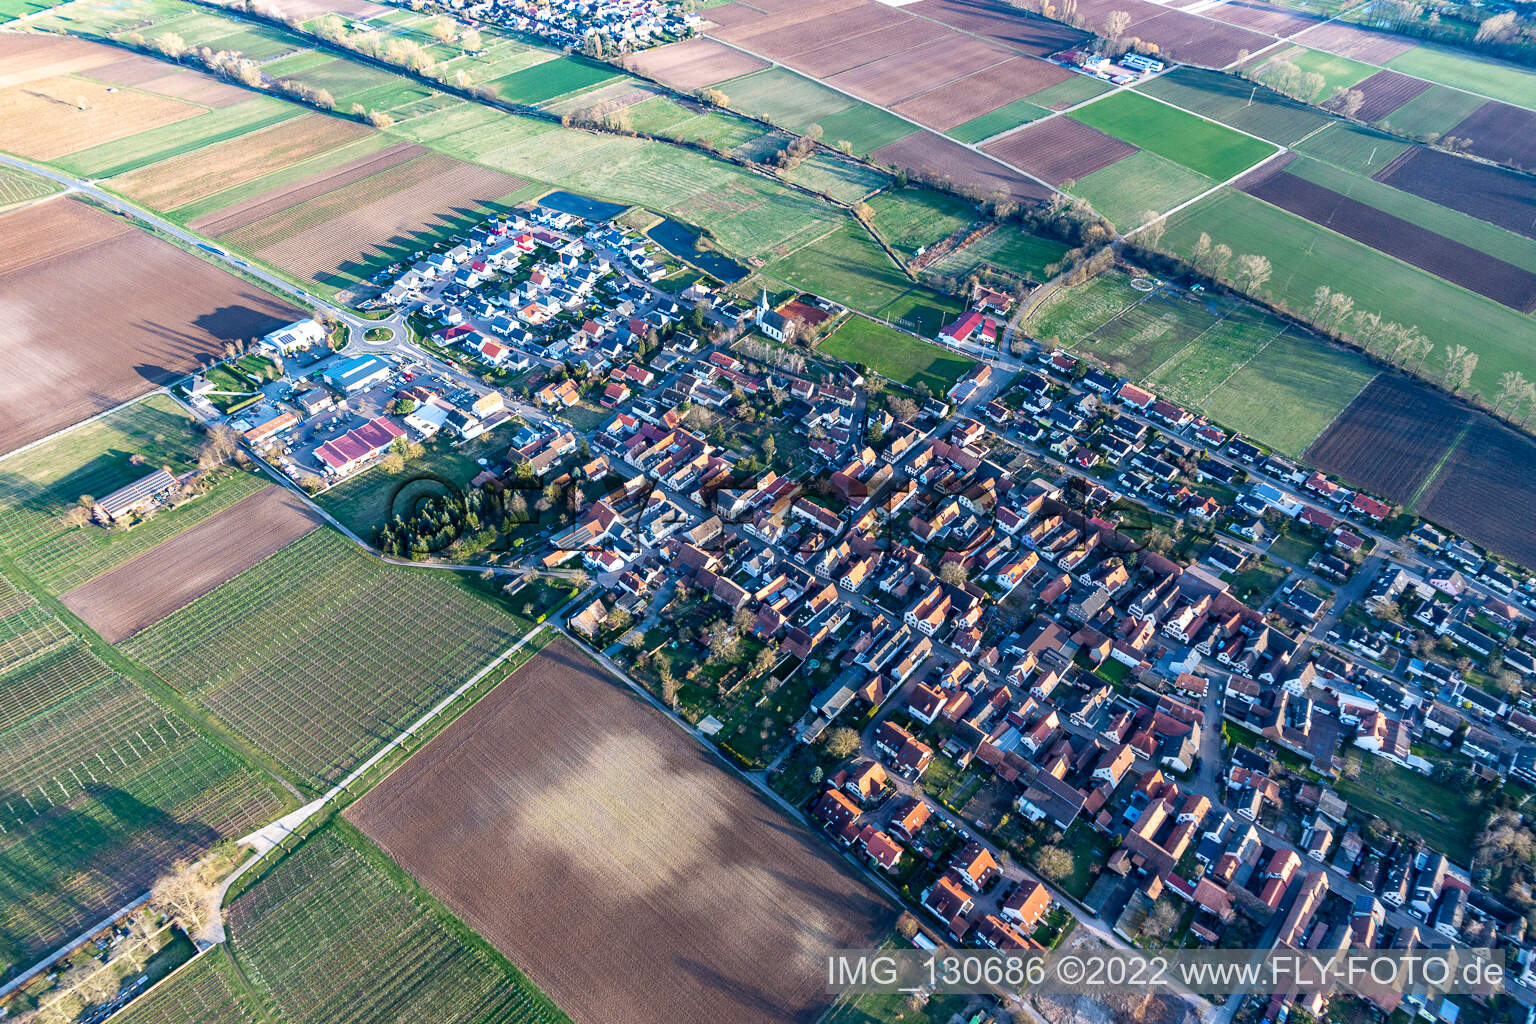 Altdorf im Bundesland Rheinland-Pfalz, Deutschland aus der Drohnenperspektive